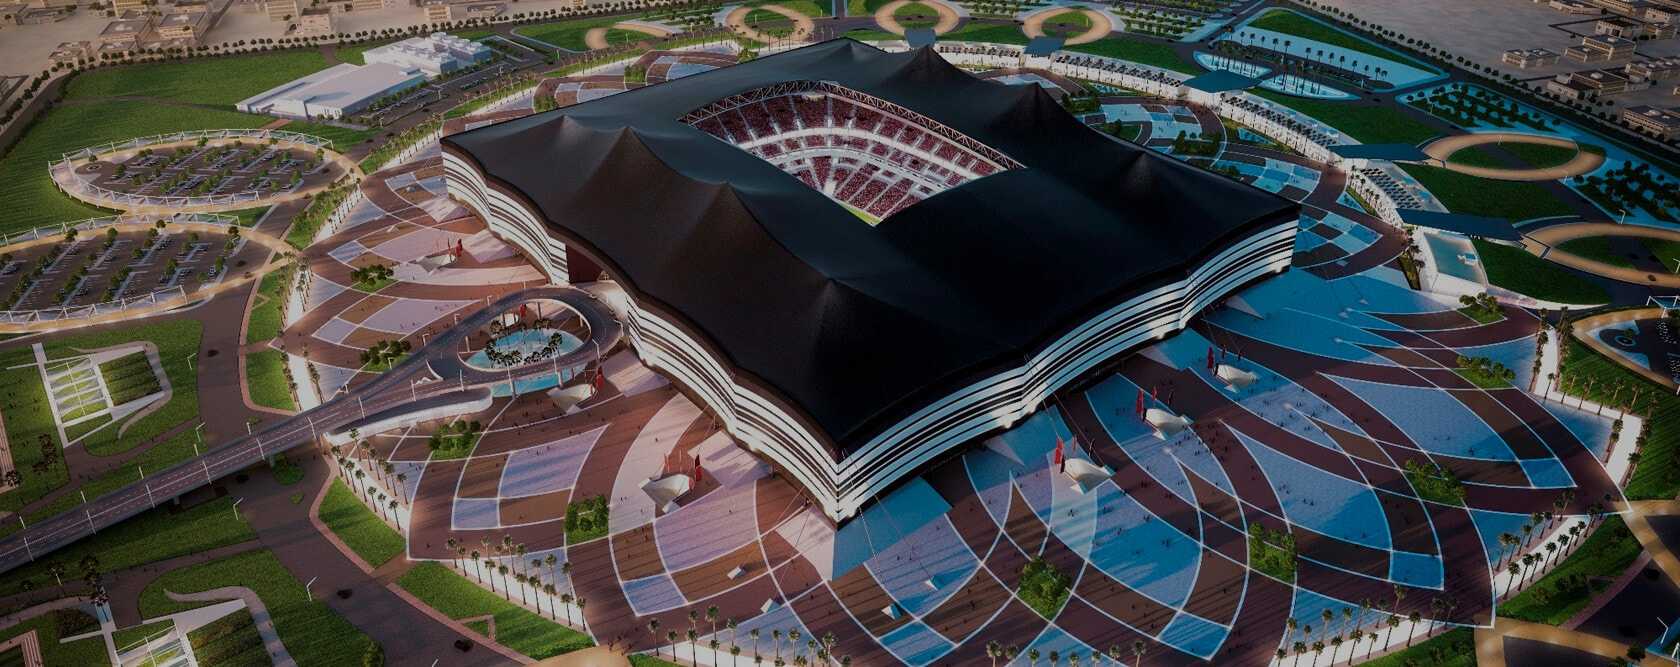 Al Bayt Stadium,Al Bayt Stadium In Qatar,al bayt stadium,al bayt stadium in qatar,Maven Trading And Installation WLL In Qatar